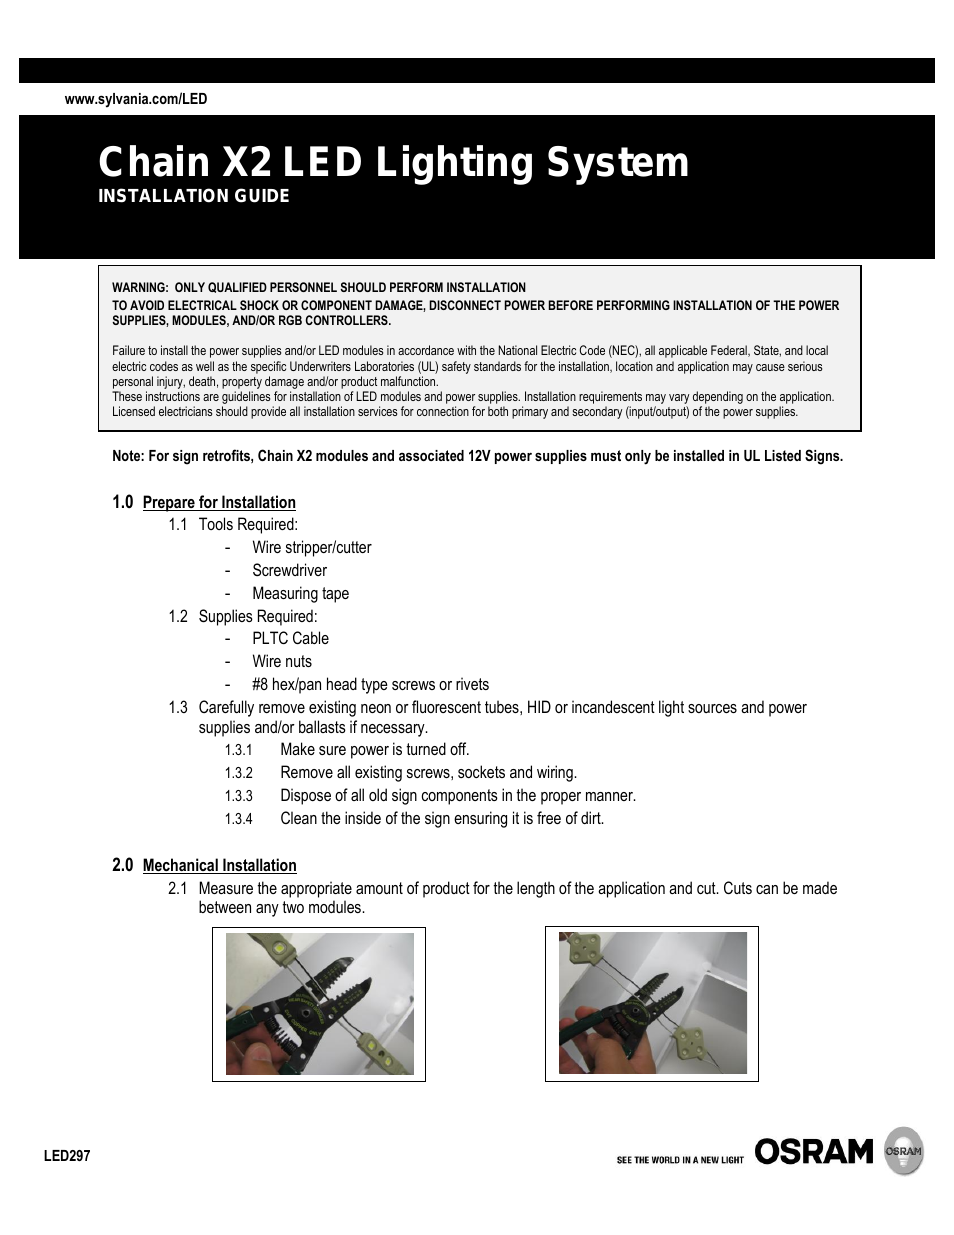 Chain X2 LED